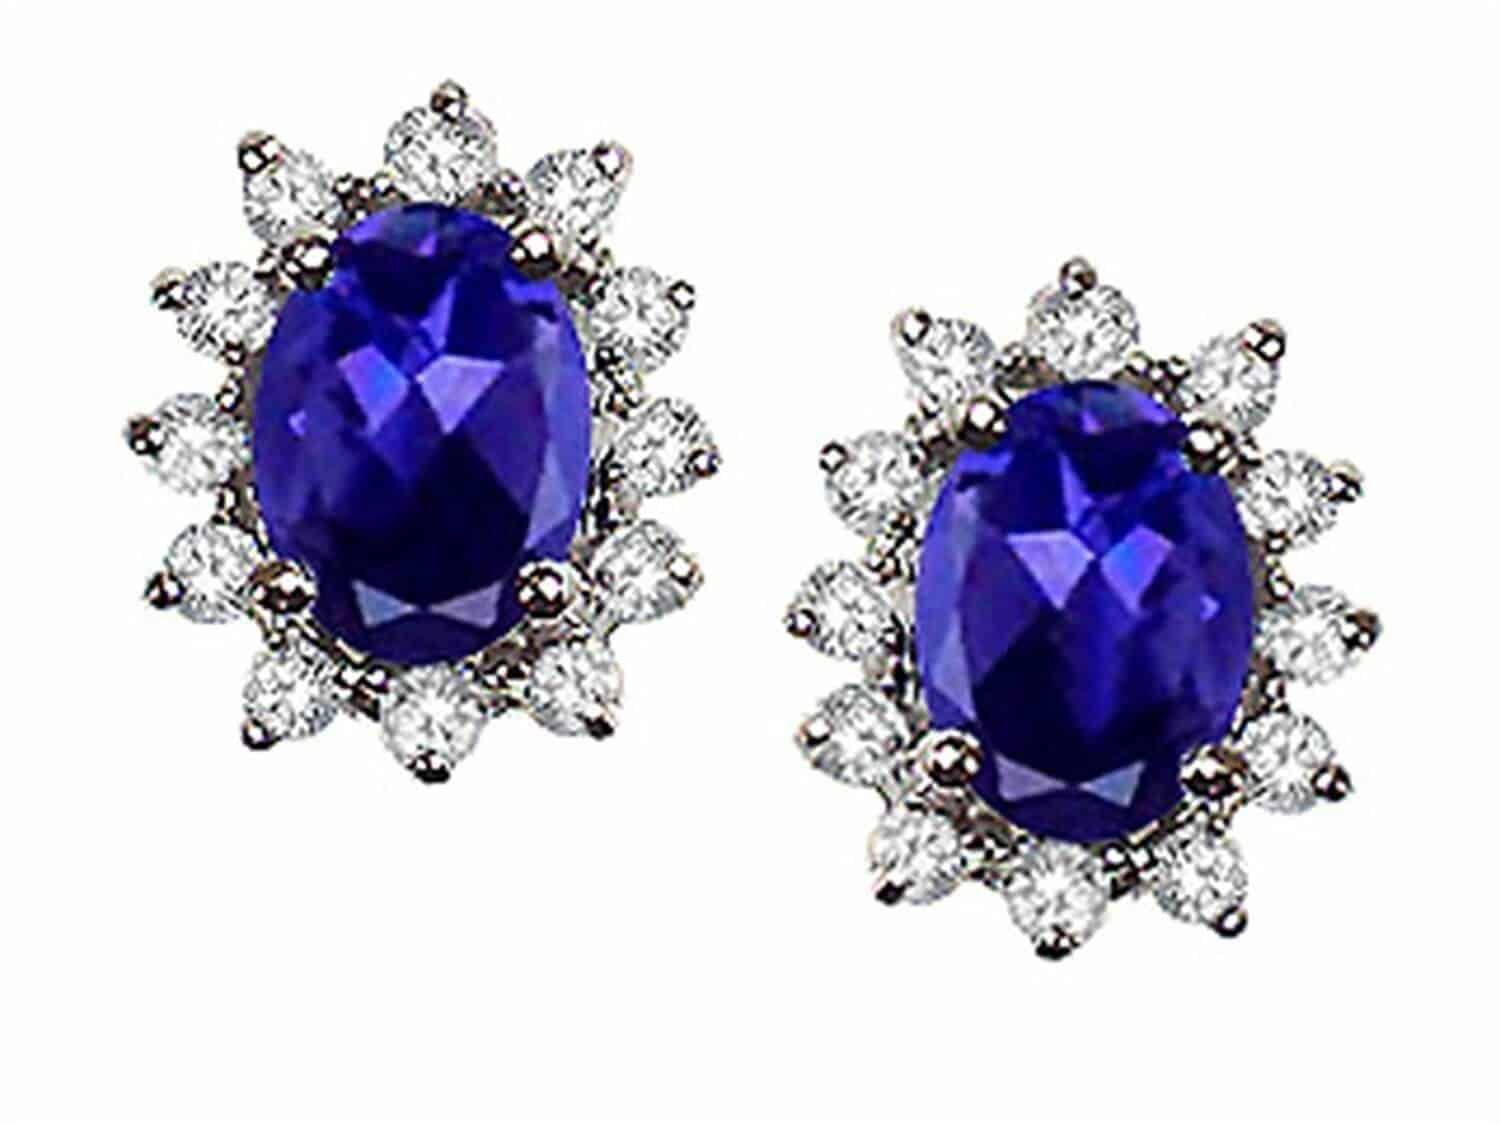 Blue Iolite earrings